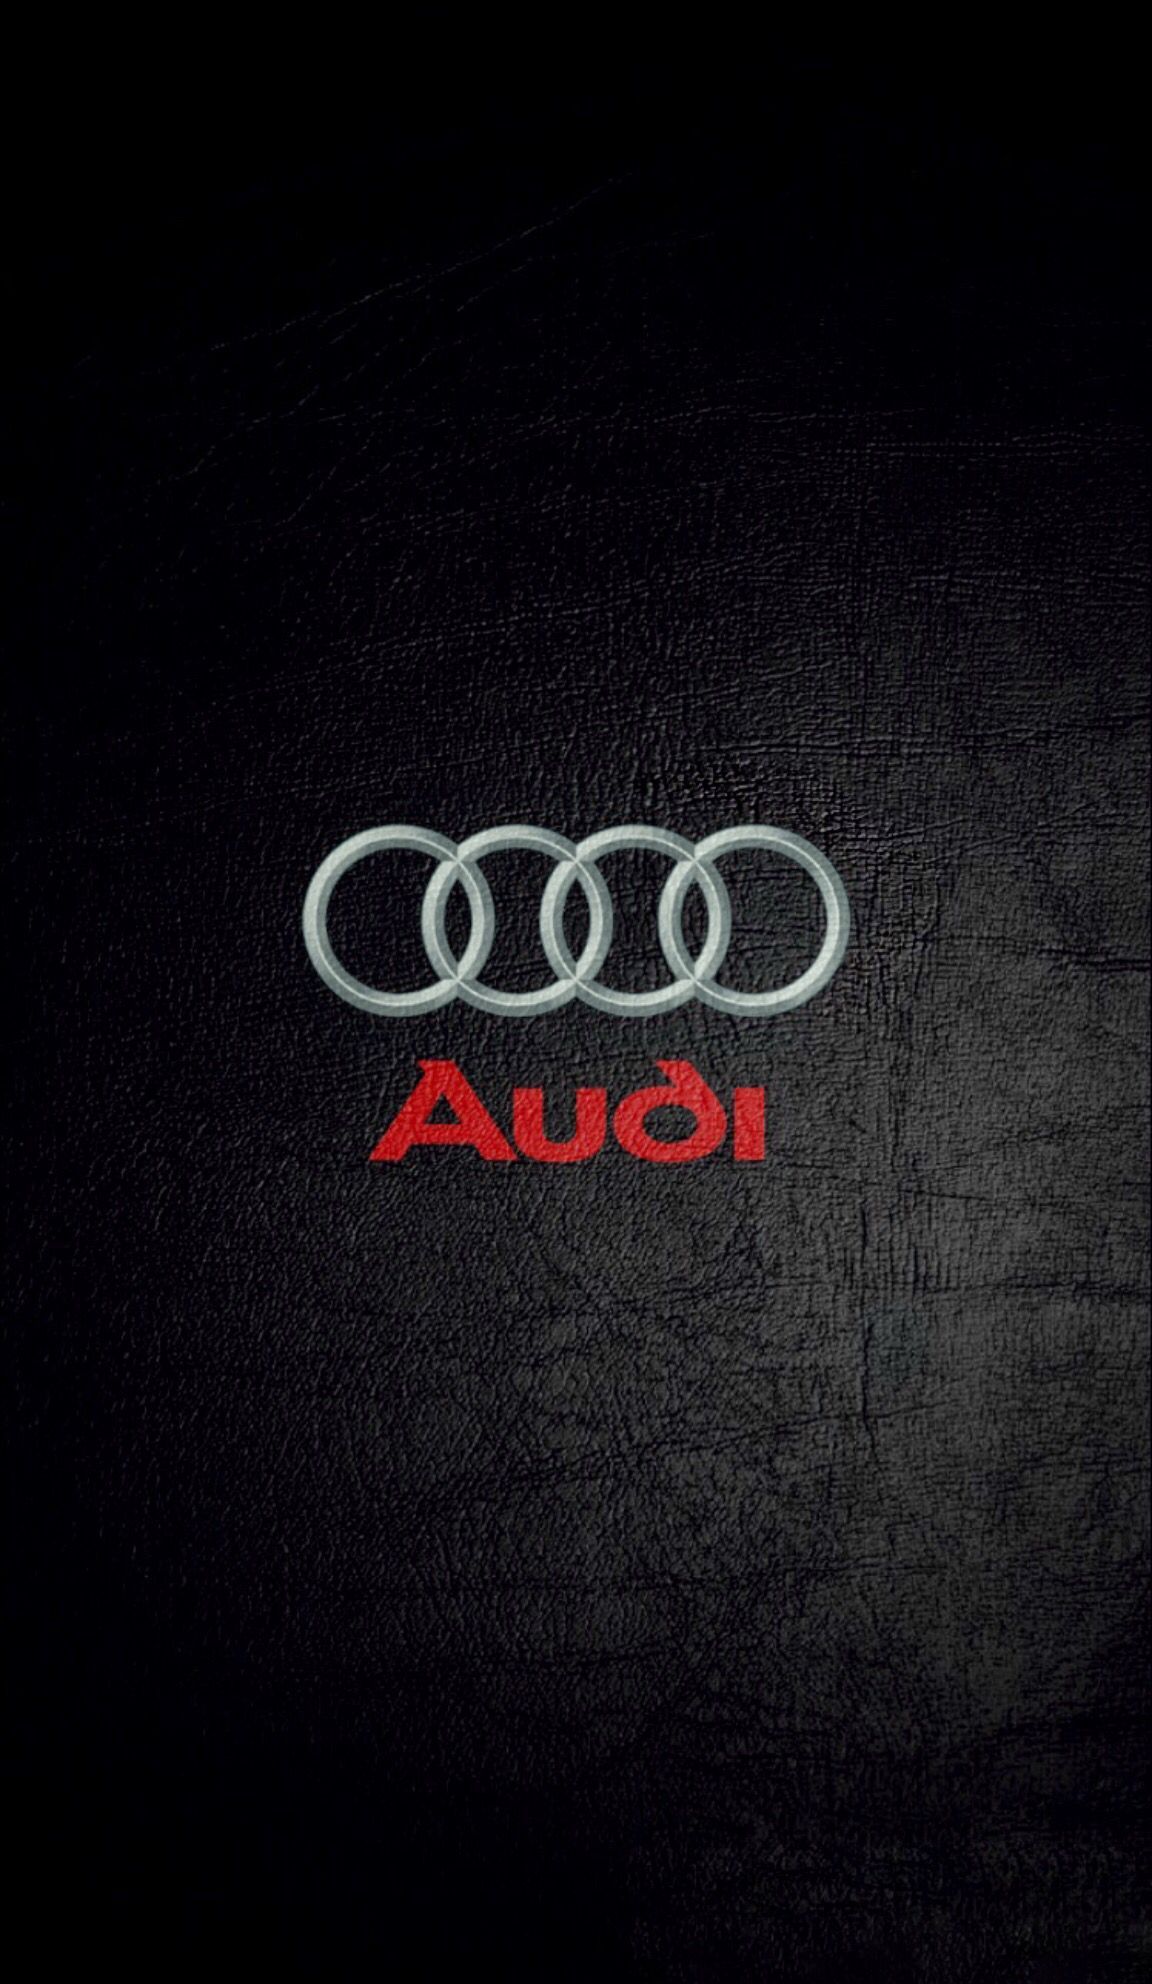 Audi logo hd phone wallpapers